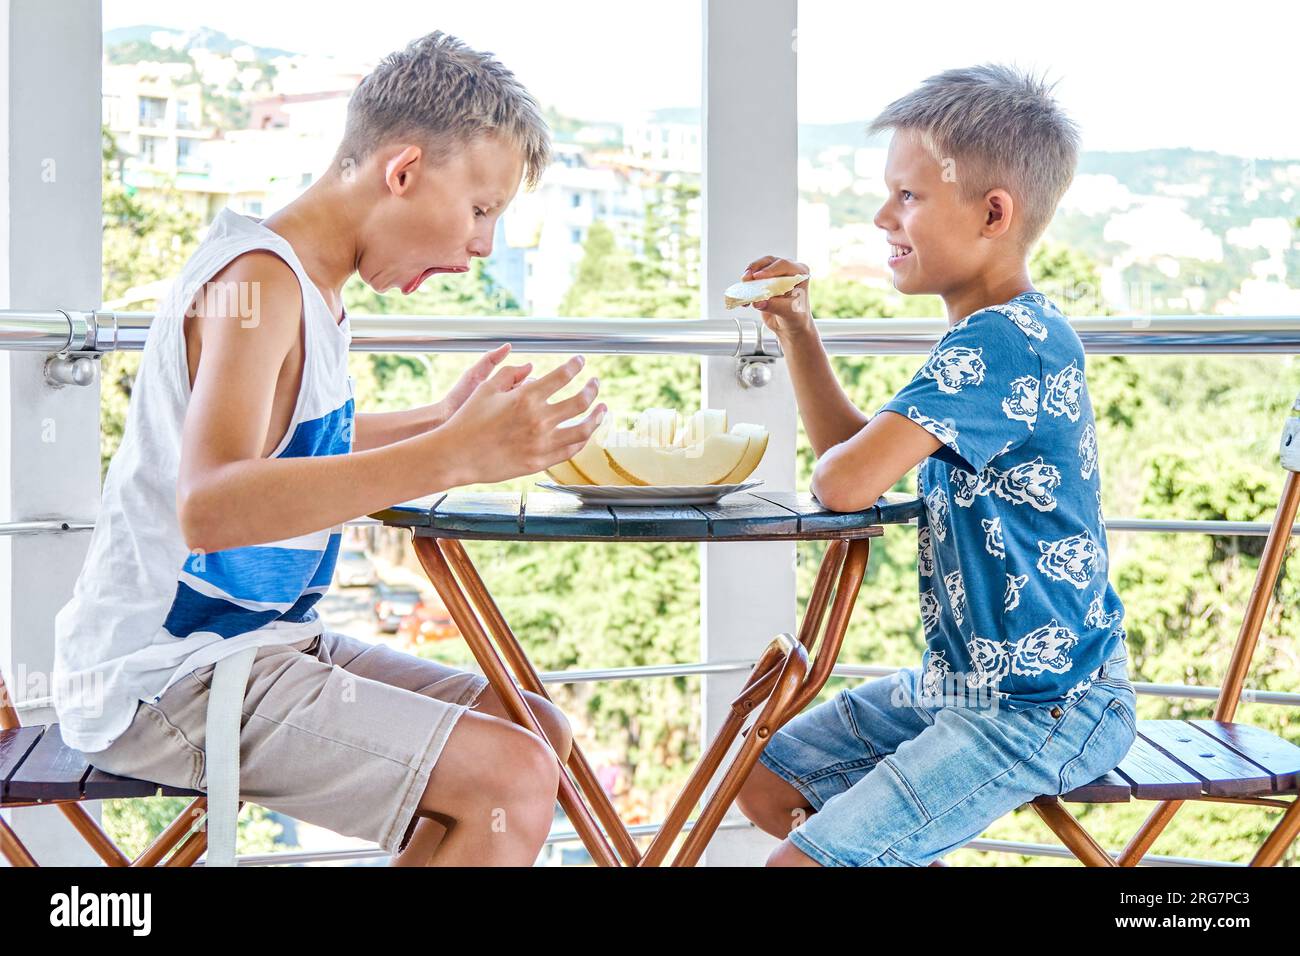 Kinder und Jugendliche genießen frische Melonen auf der Hotelterrasse. Geschwister essen Melonenscheiben mit aufgeregtem Ausdruck Stockfoto